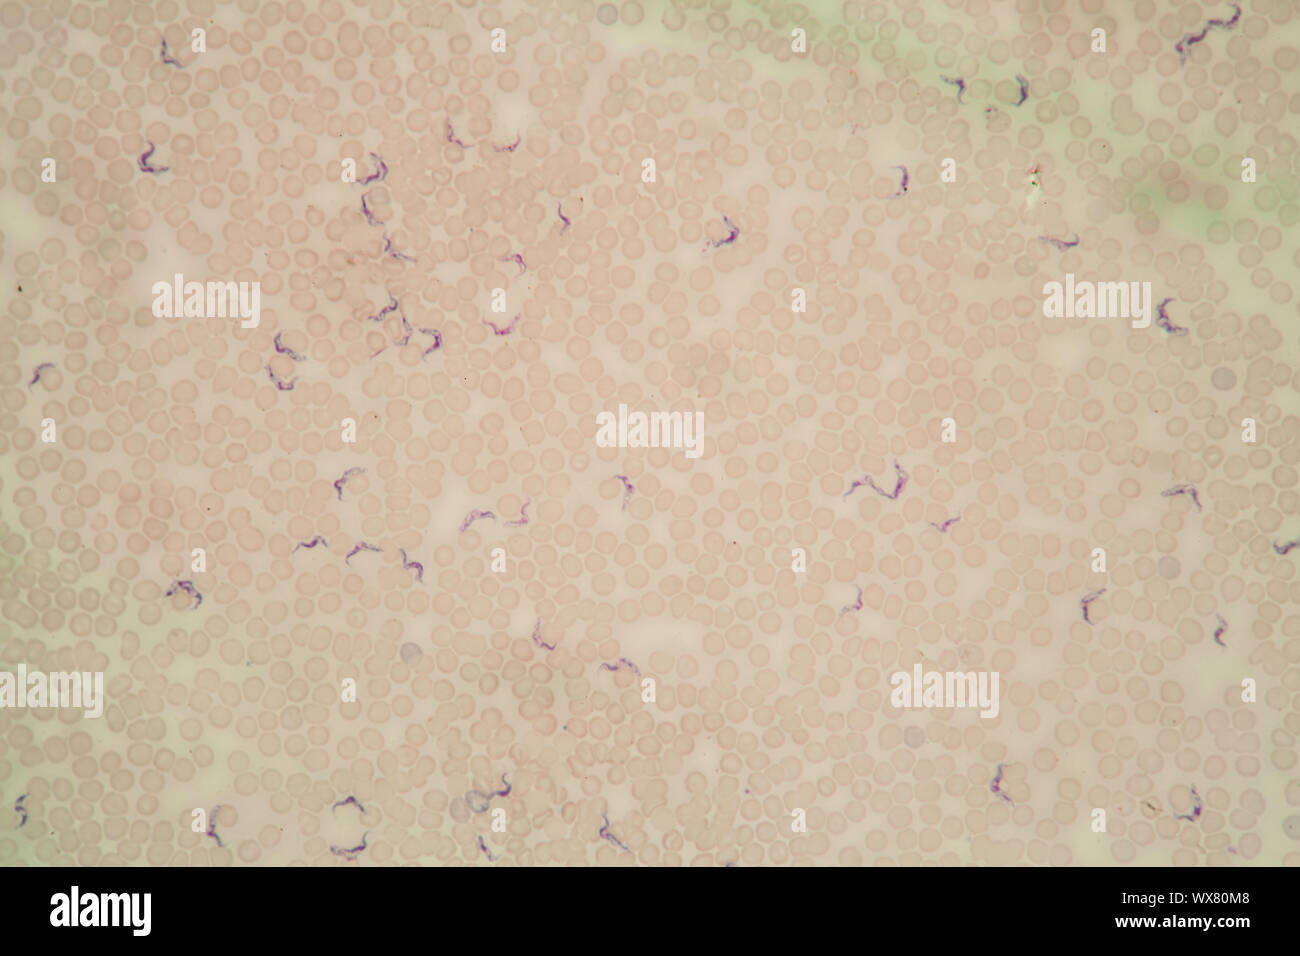 La maladie du sommeil au microscope des trypanosomes dans le sang 400x Banque D'Images